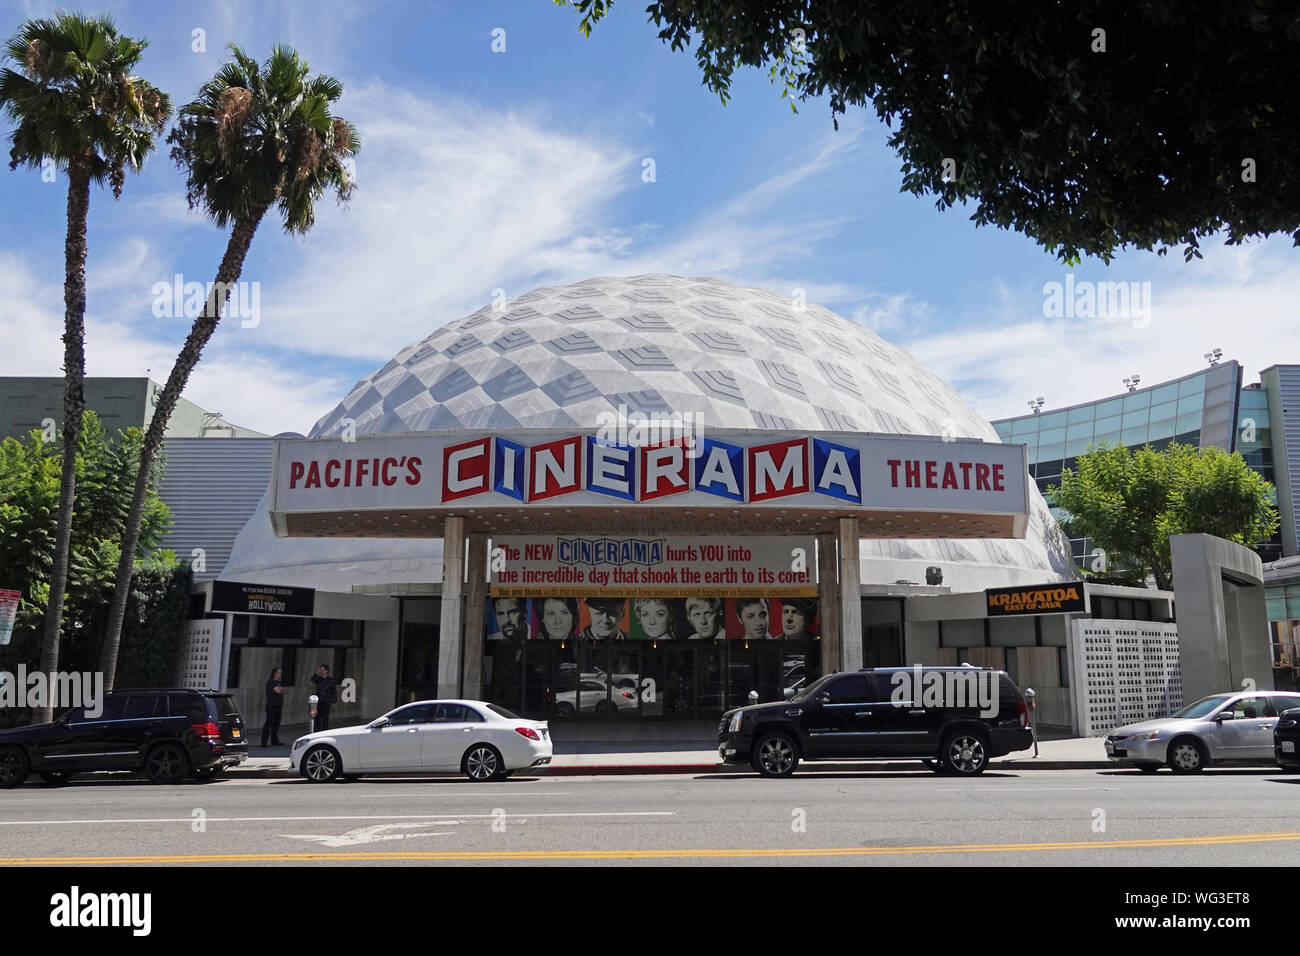 Hollywood, Californie / USA - 18 août 2019 : le théâtre de Cinerama Dome monument de cinéma est illustré au cours de la journée. L'emblématique bâtiment inauguré en 1963. Banque D'Images